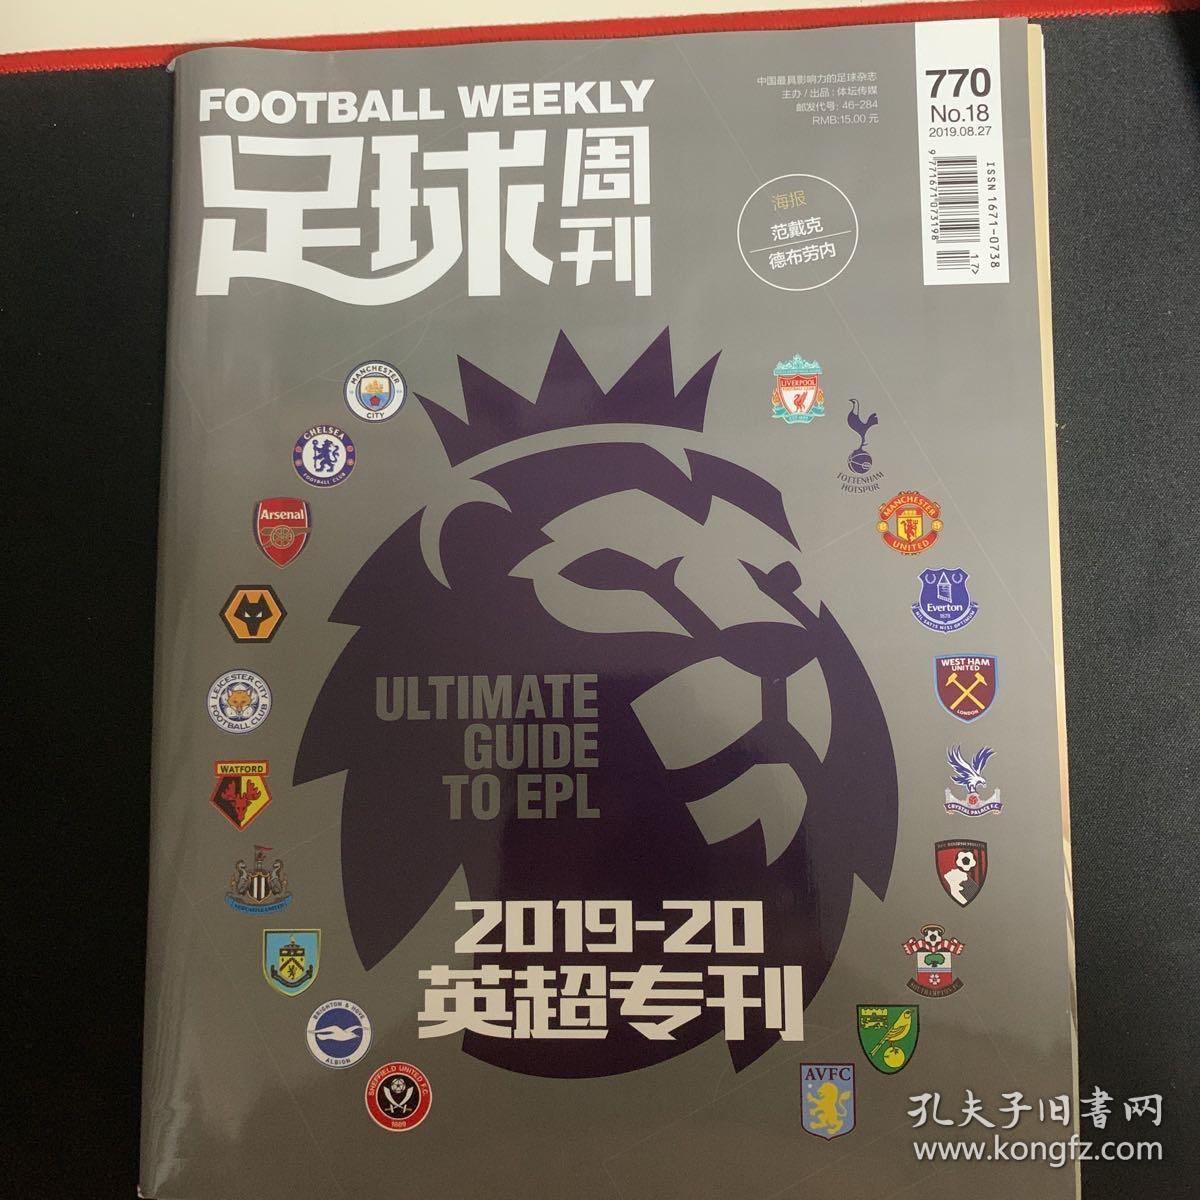 足球周刊770，2019-20英超专刊，无赠品。